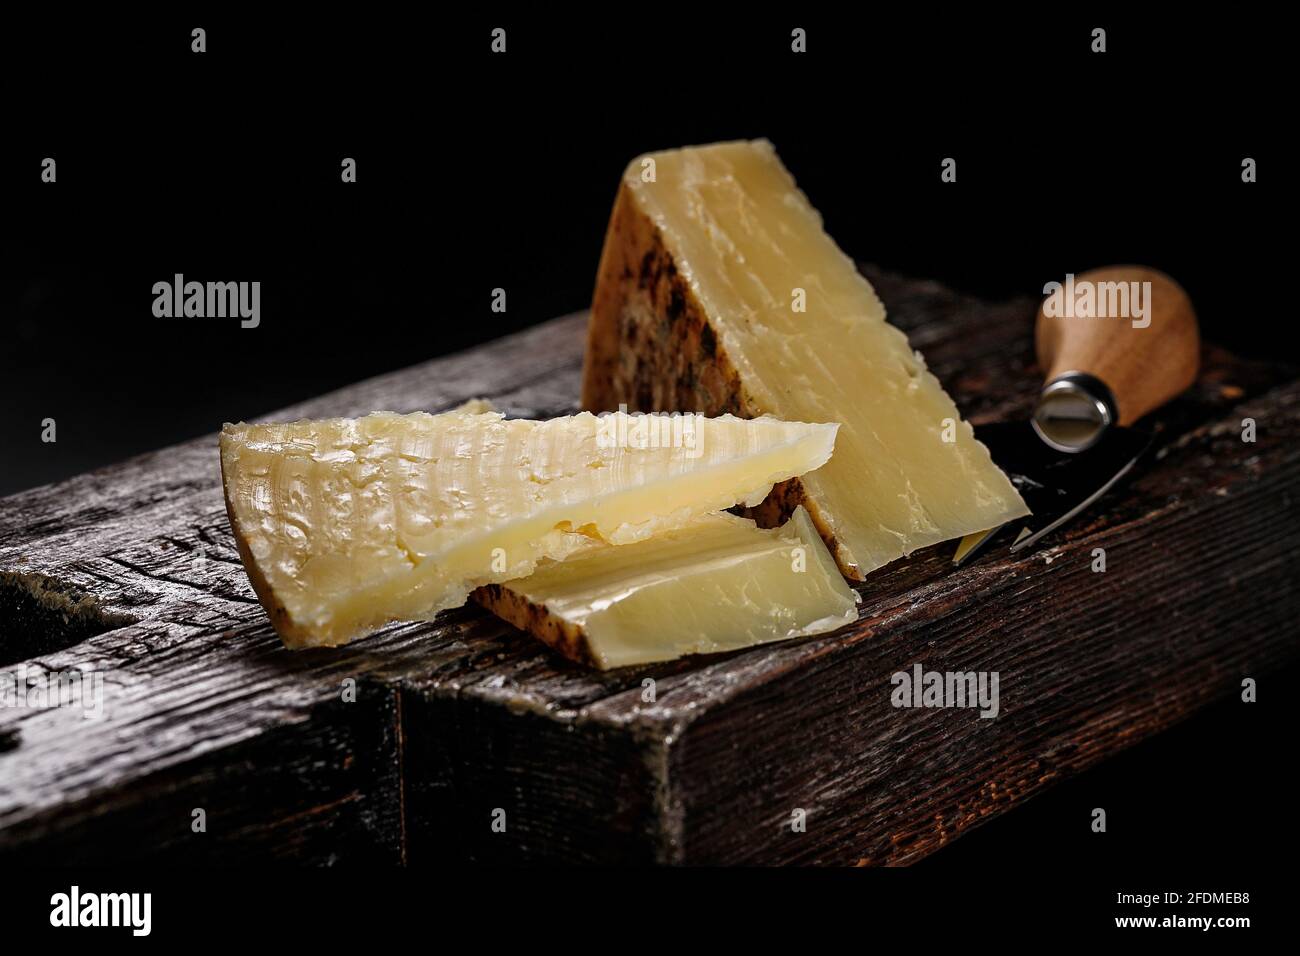 Nahaufnahme von Cheddar-Käse. Halbweicher, gereifter Kuhmilchkäse nach einem alten englischen Rezept. Stück Käse auf einem dunklen Holzbrett und Messer für Stockfoto